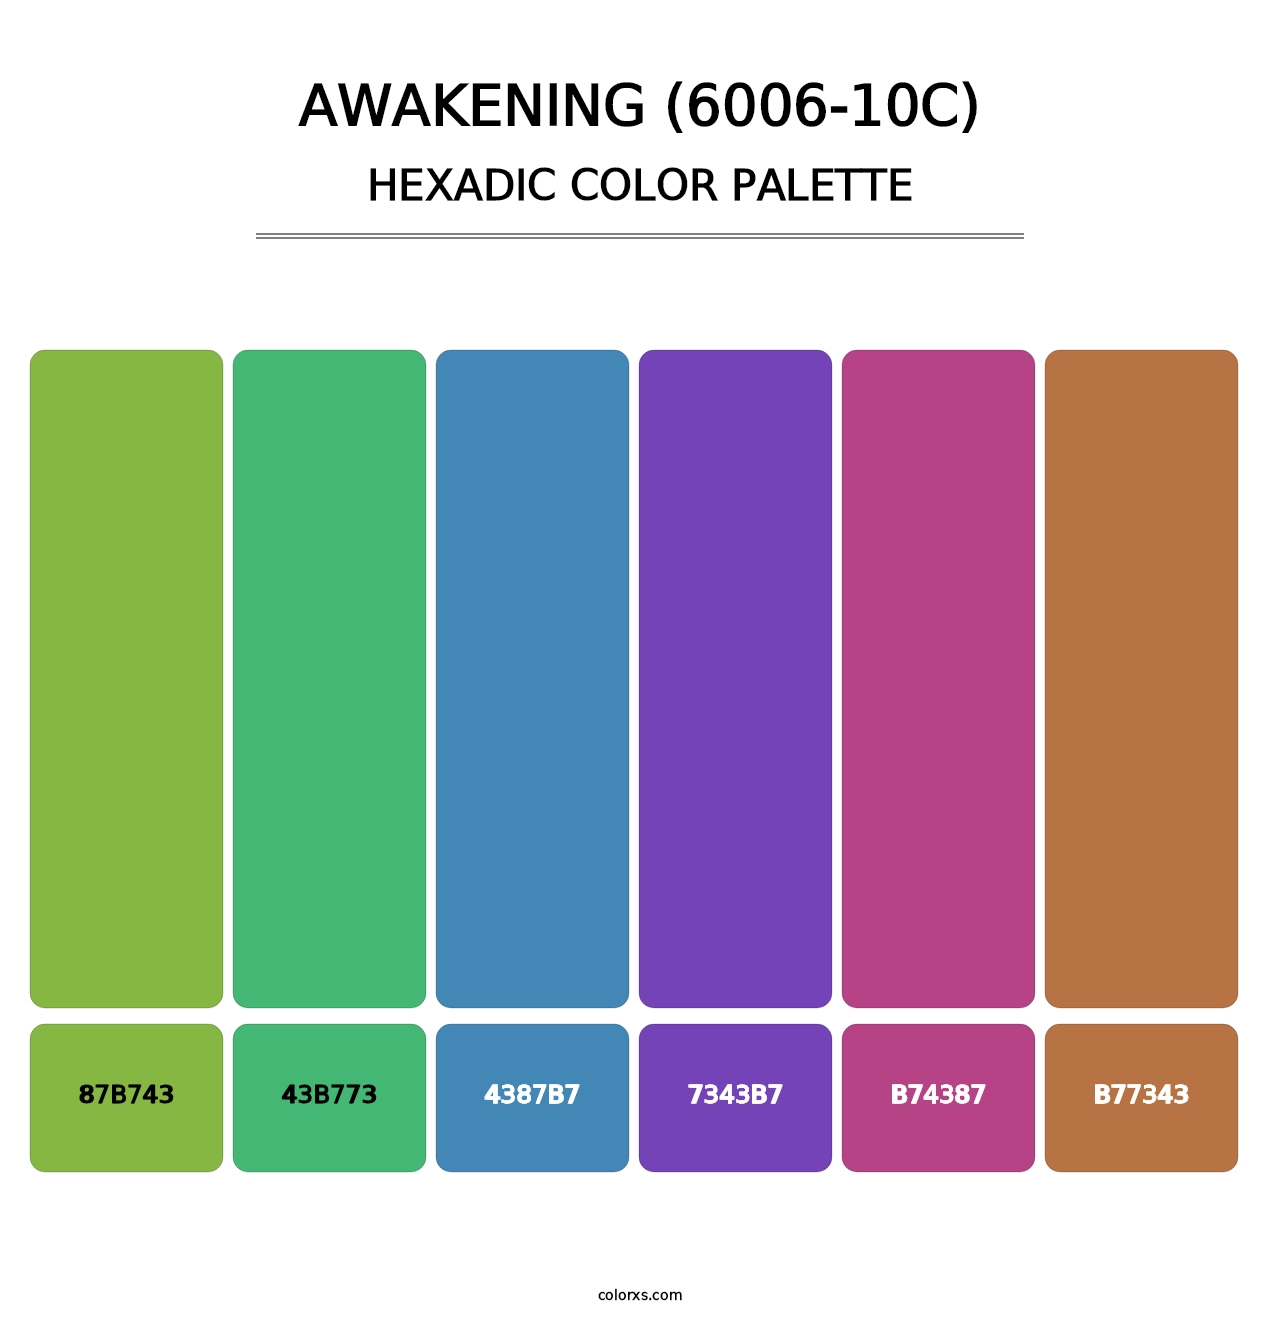 Awakening (6006-10C) - Hexadic Color Palette